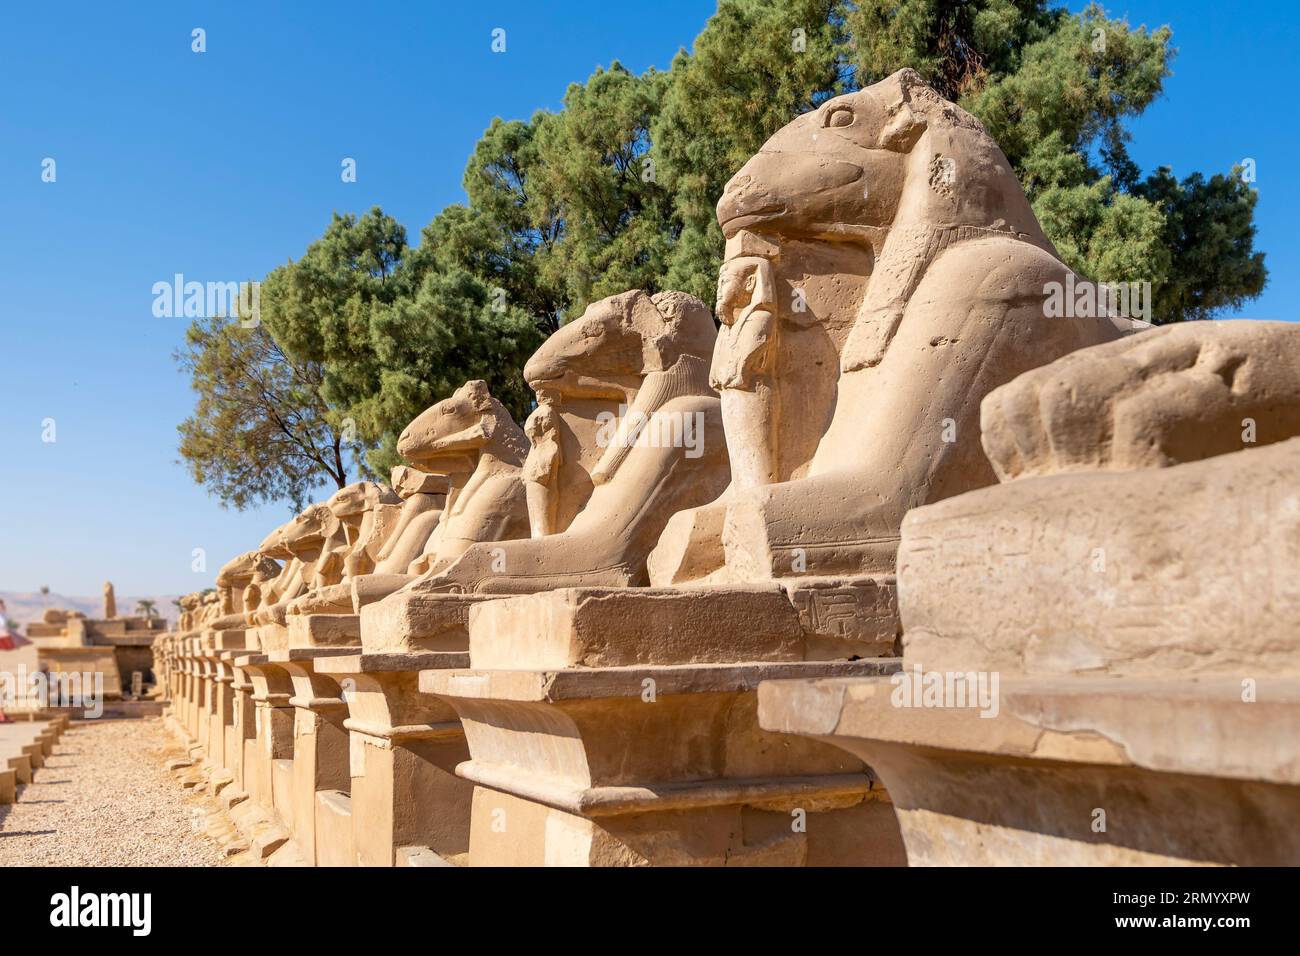 Avenue des Sphinx ou la route des festivités du roi, également connue sous le nom de Rams Road est une avenue de 2,7 km de long qui relie le temple de Karnak au temple de Louxor. Banque D'Images